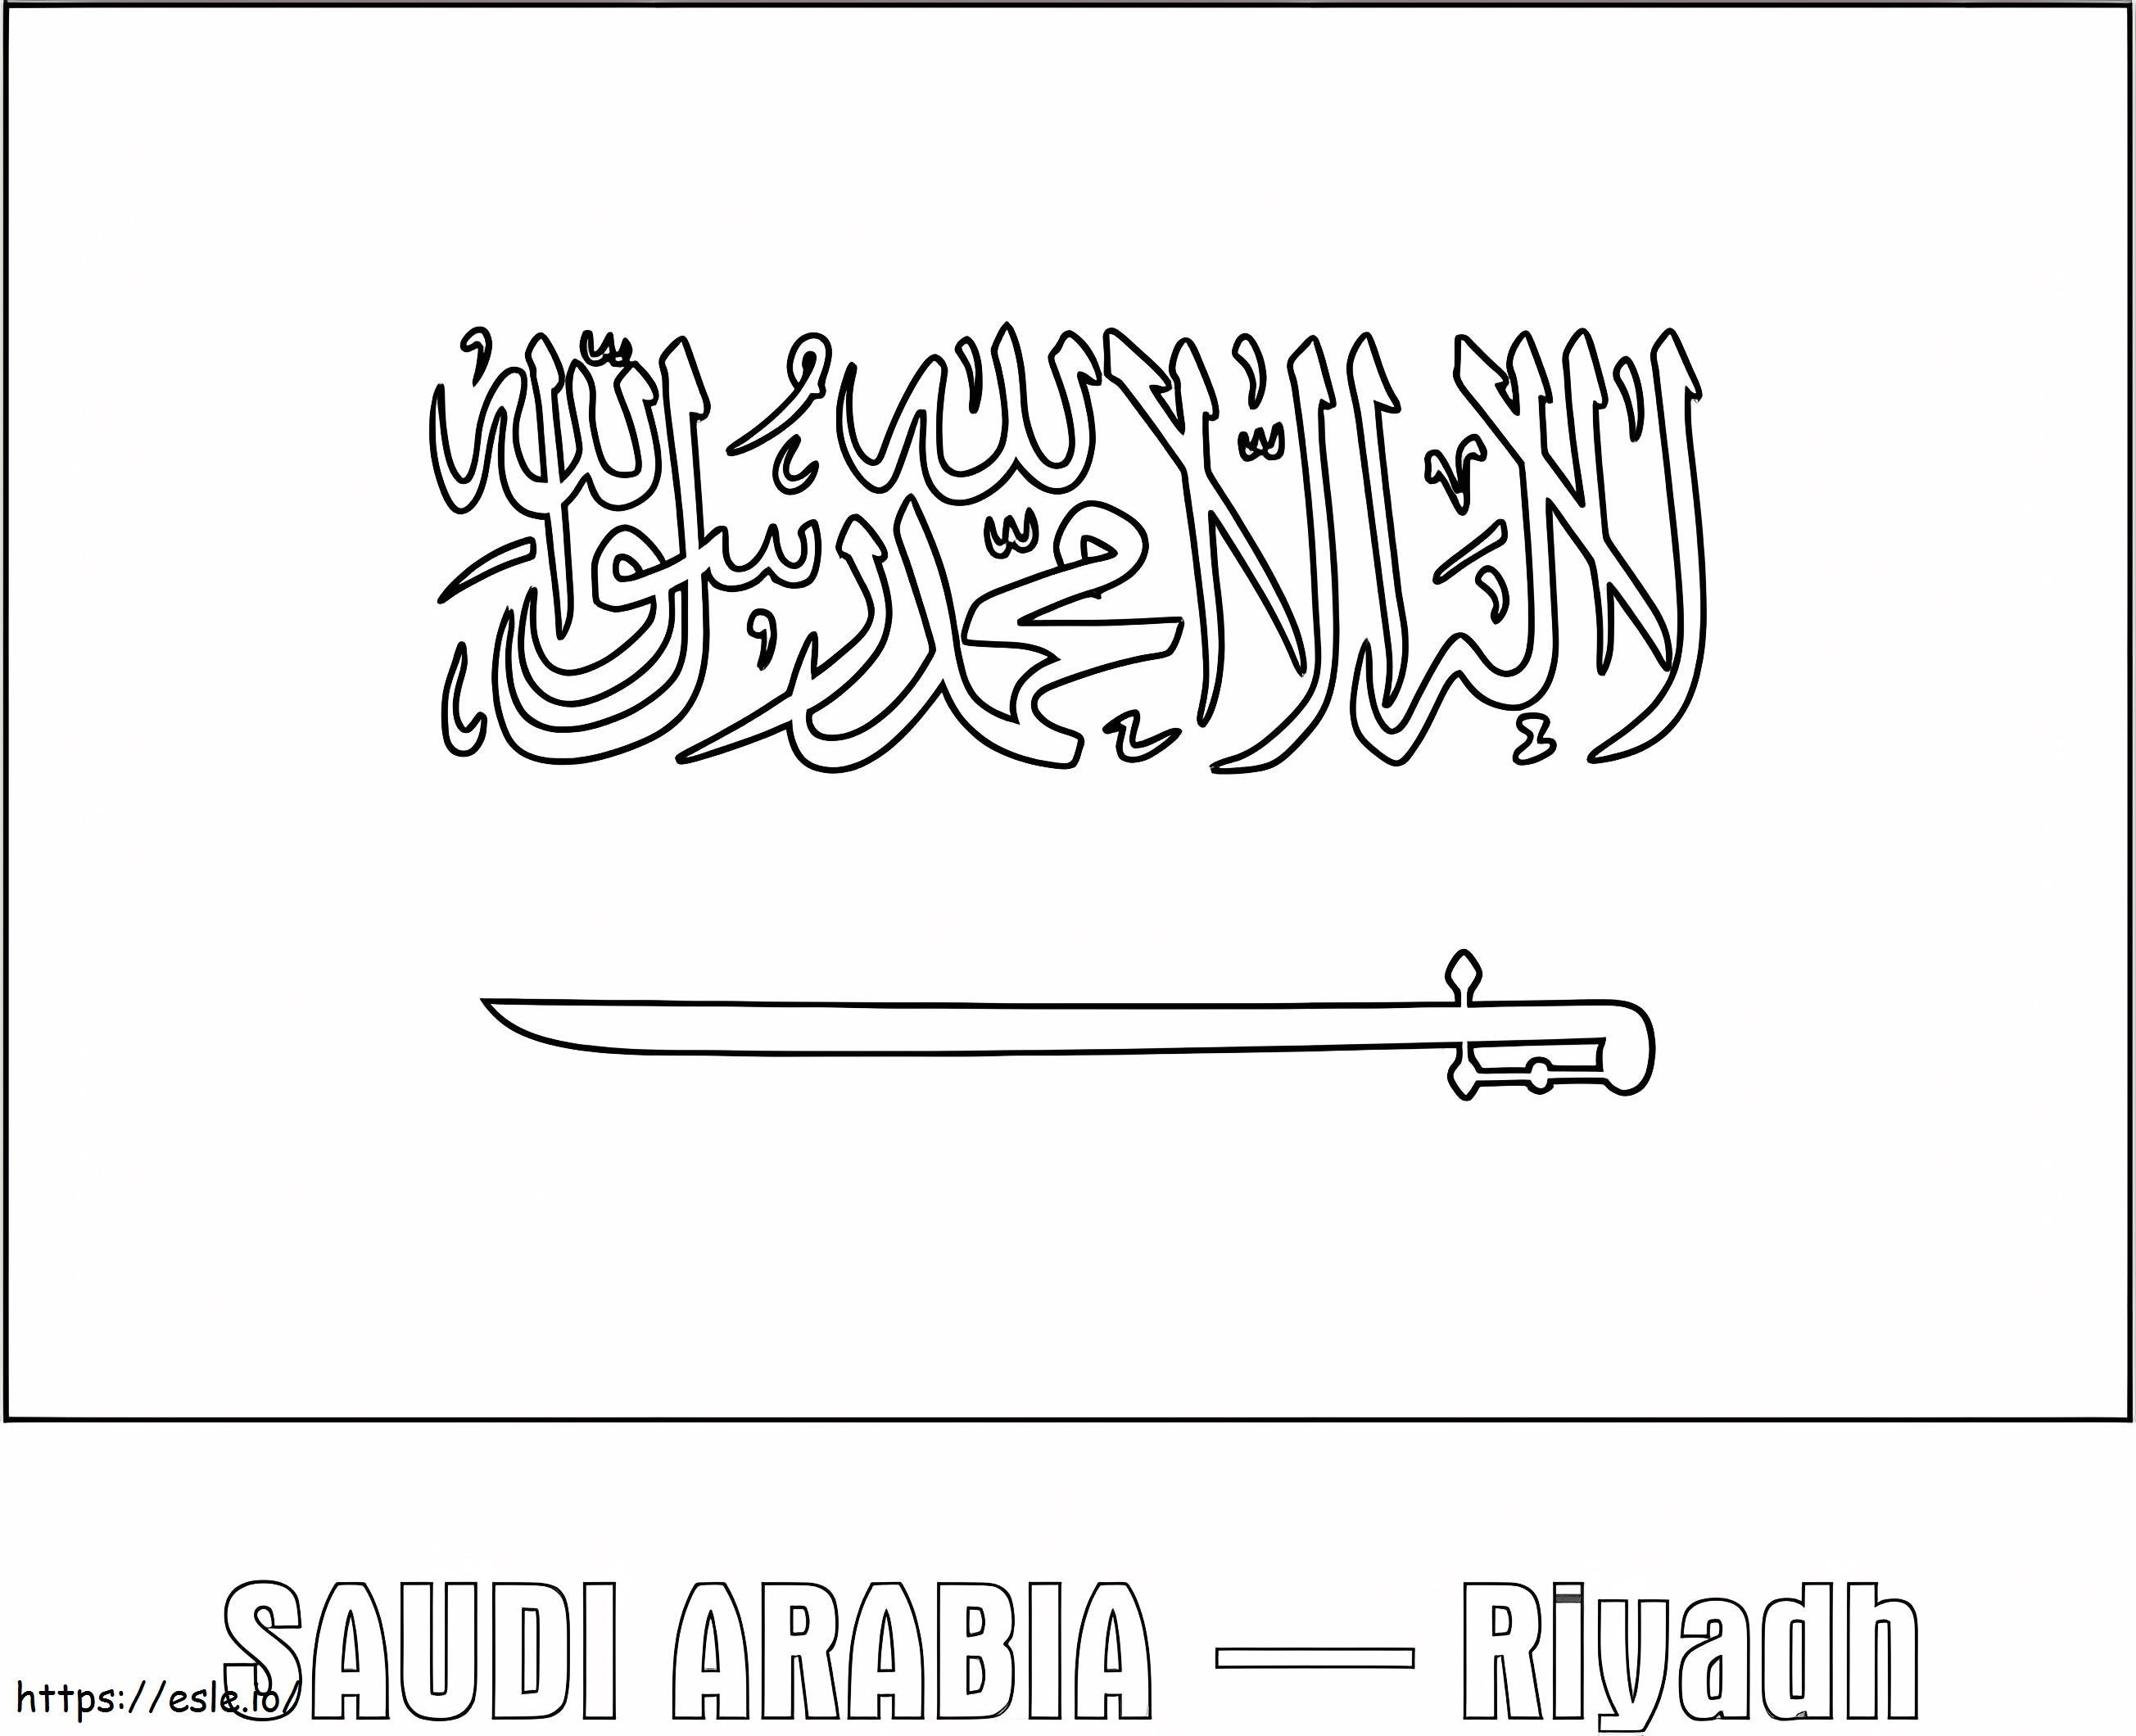 Suudi Arabistan Bayrağı 1 boyama